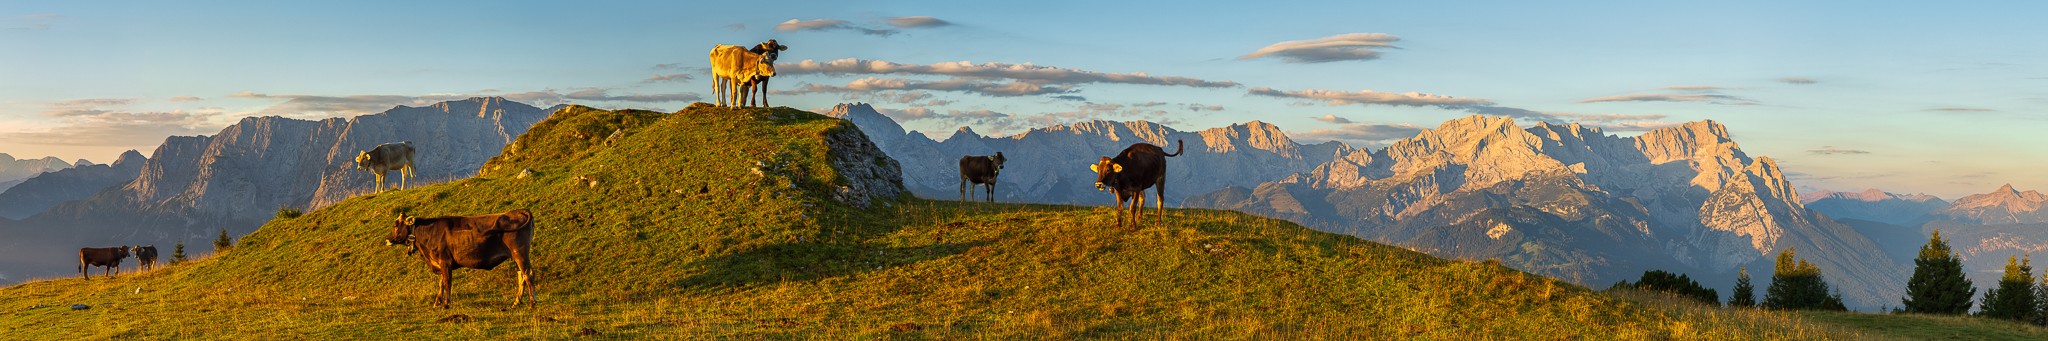 Bergpanorama mit Kühen auf der Almwiese bei Sonnenaufgang. Die Kälber am Wank bei Garmisch-Partenkirchen erfreuen sich an den ersten Sonnenstrahlen. Im Hintergrund das Wettersteingebirge von der Unteren Wettersteinspitze bis zur Zugspitze.